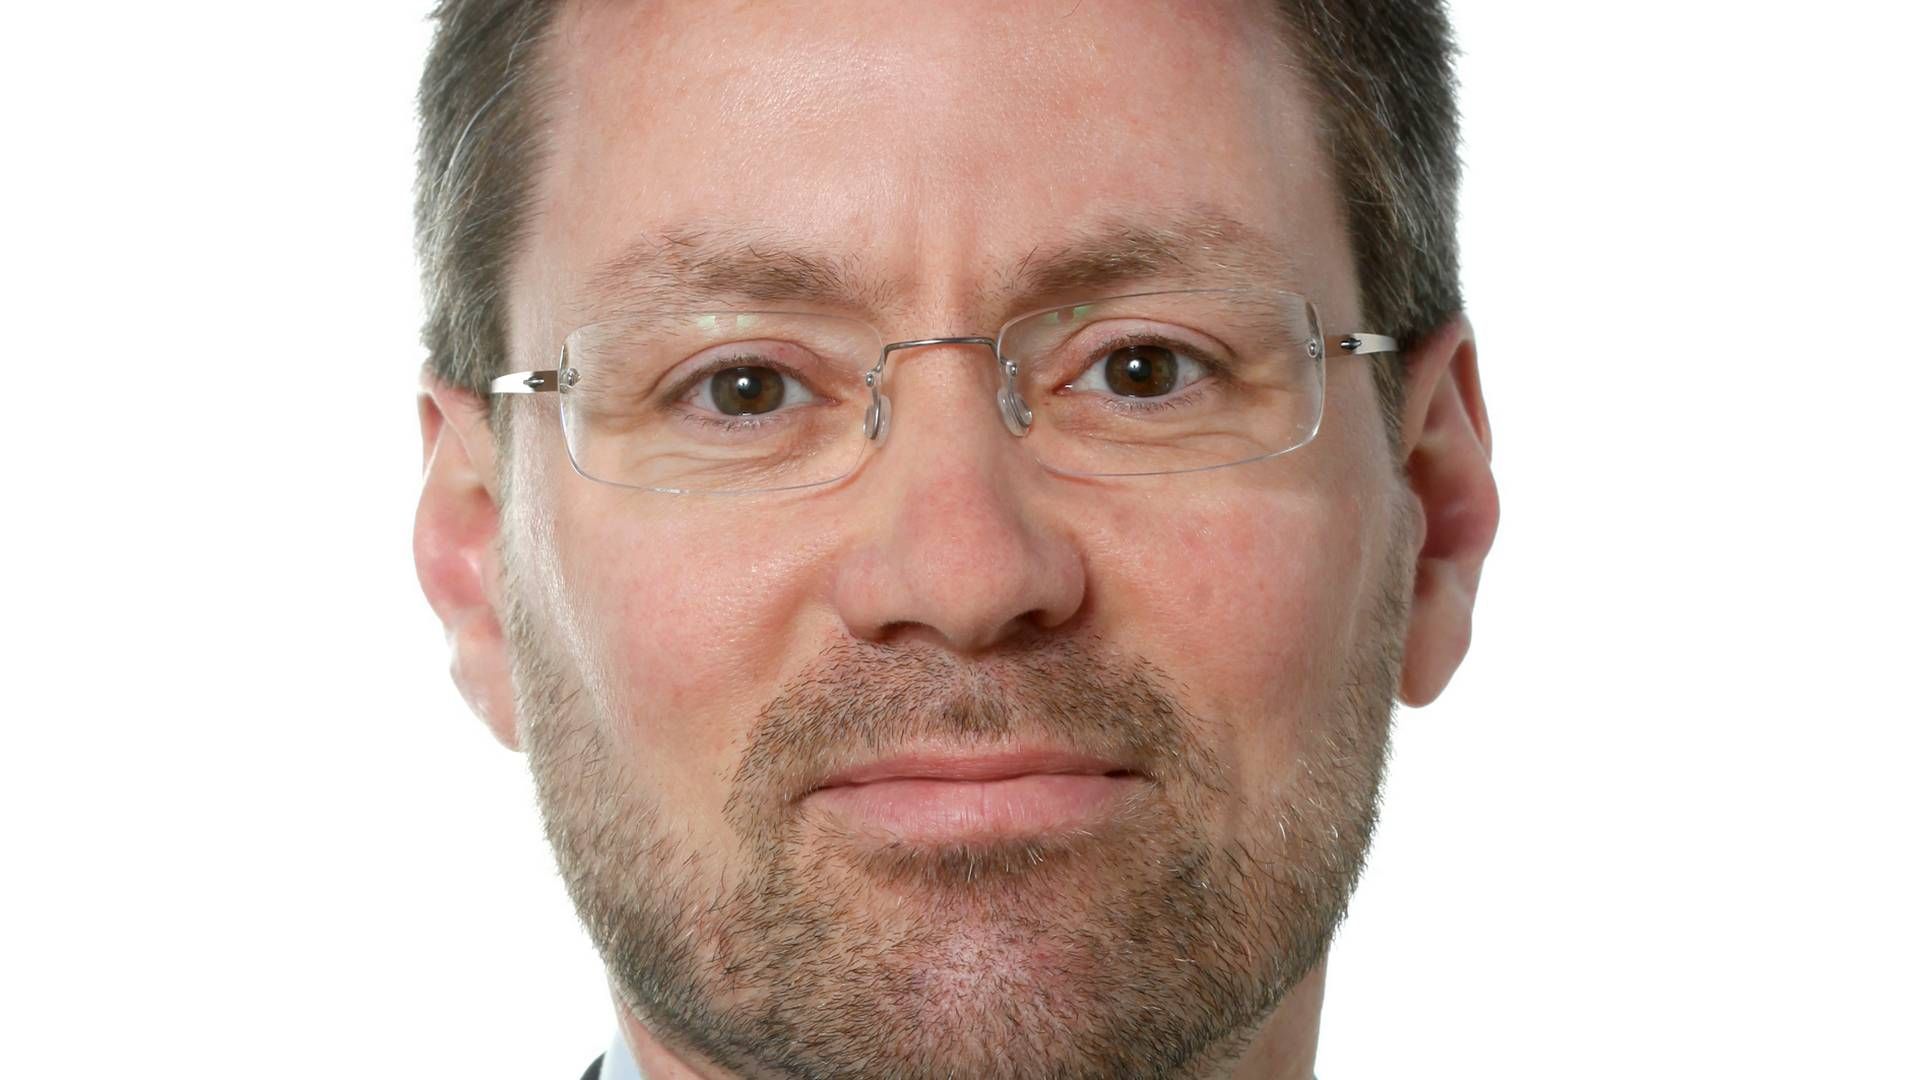 Eerhvervsøkonomisk chef Klaus Kaiser fra Seges Innovation. | Foto: Pr / Seges